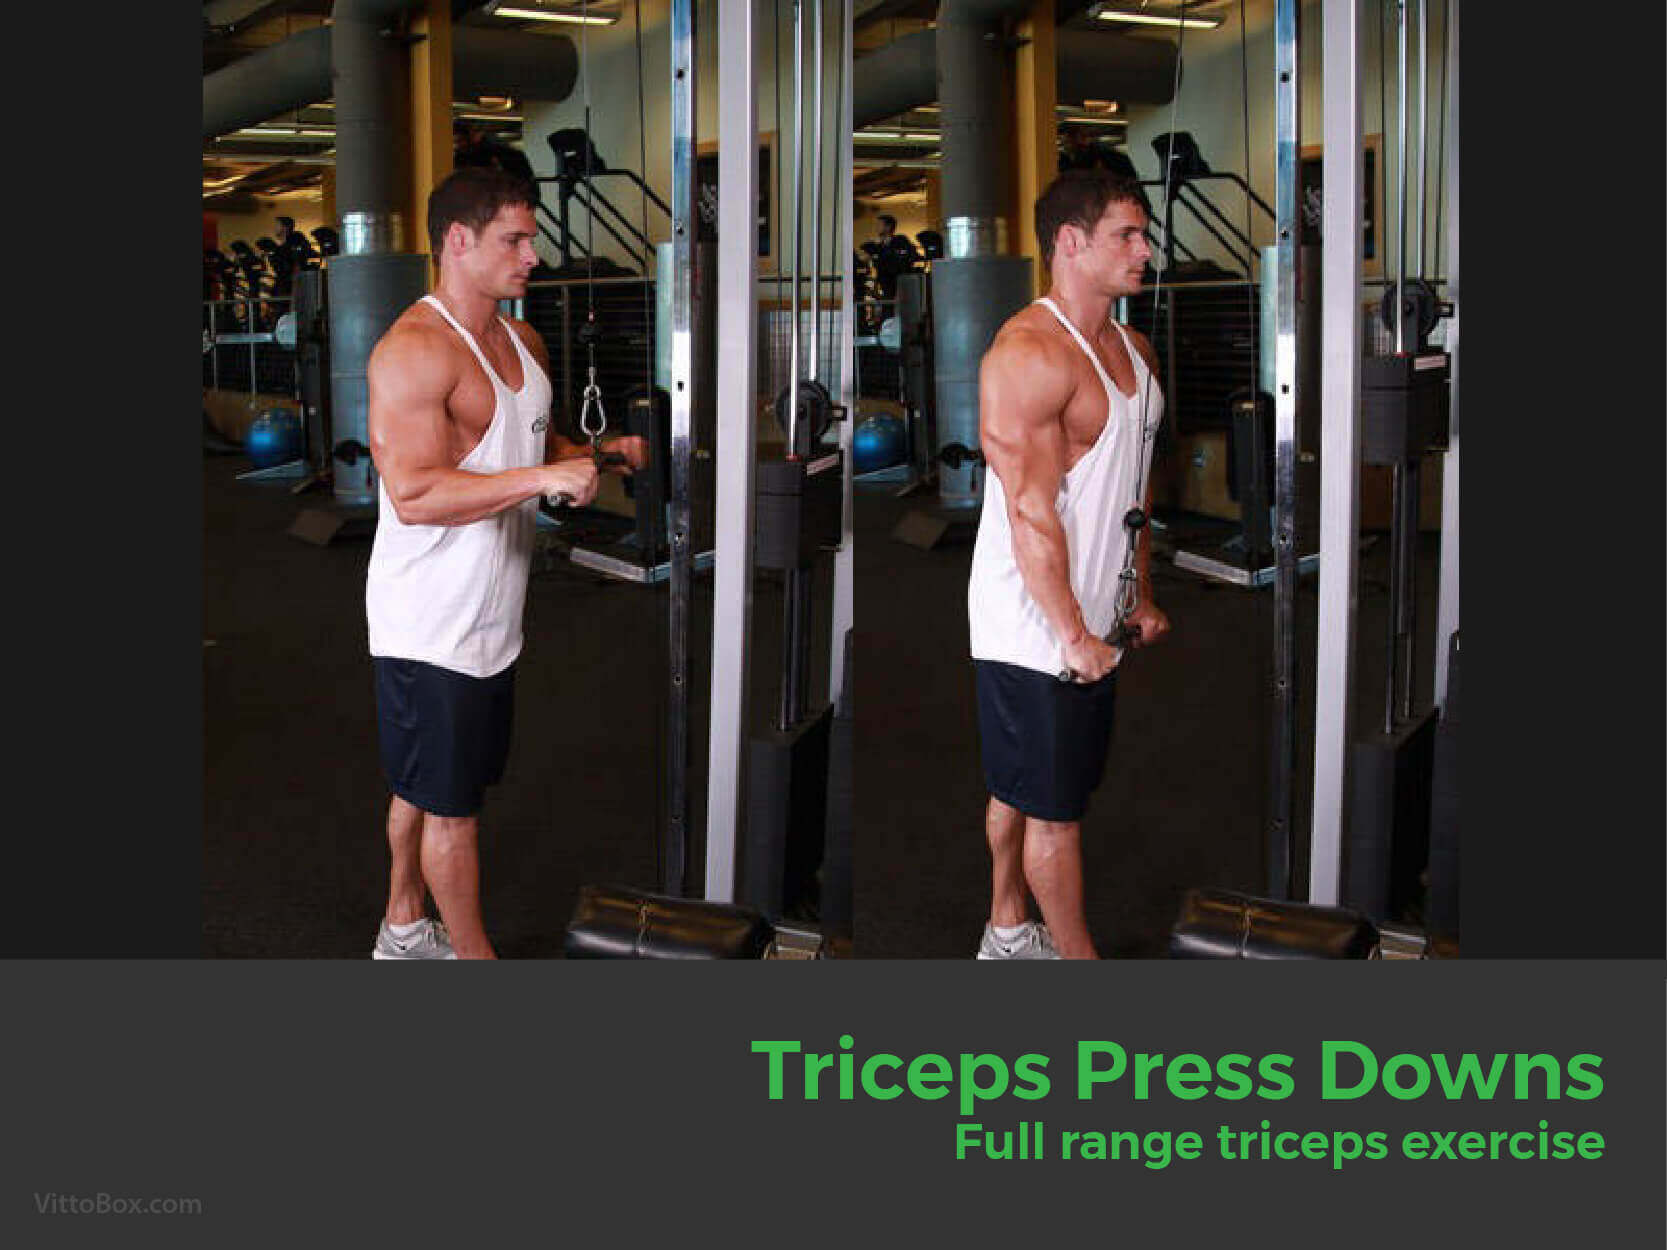 Triceps Press Downs - Full Range Triceps Exercise